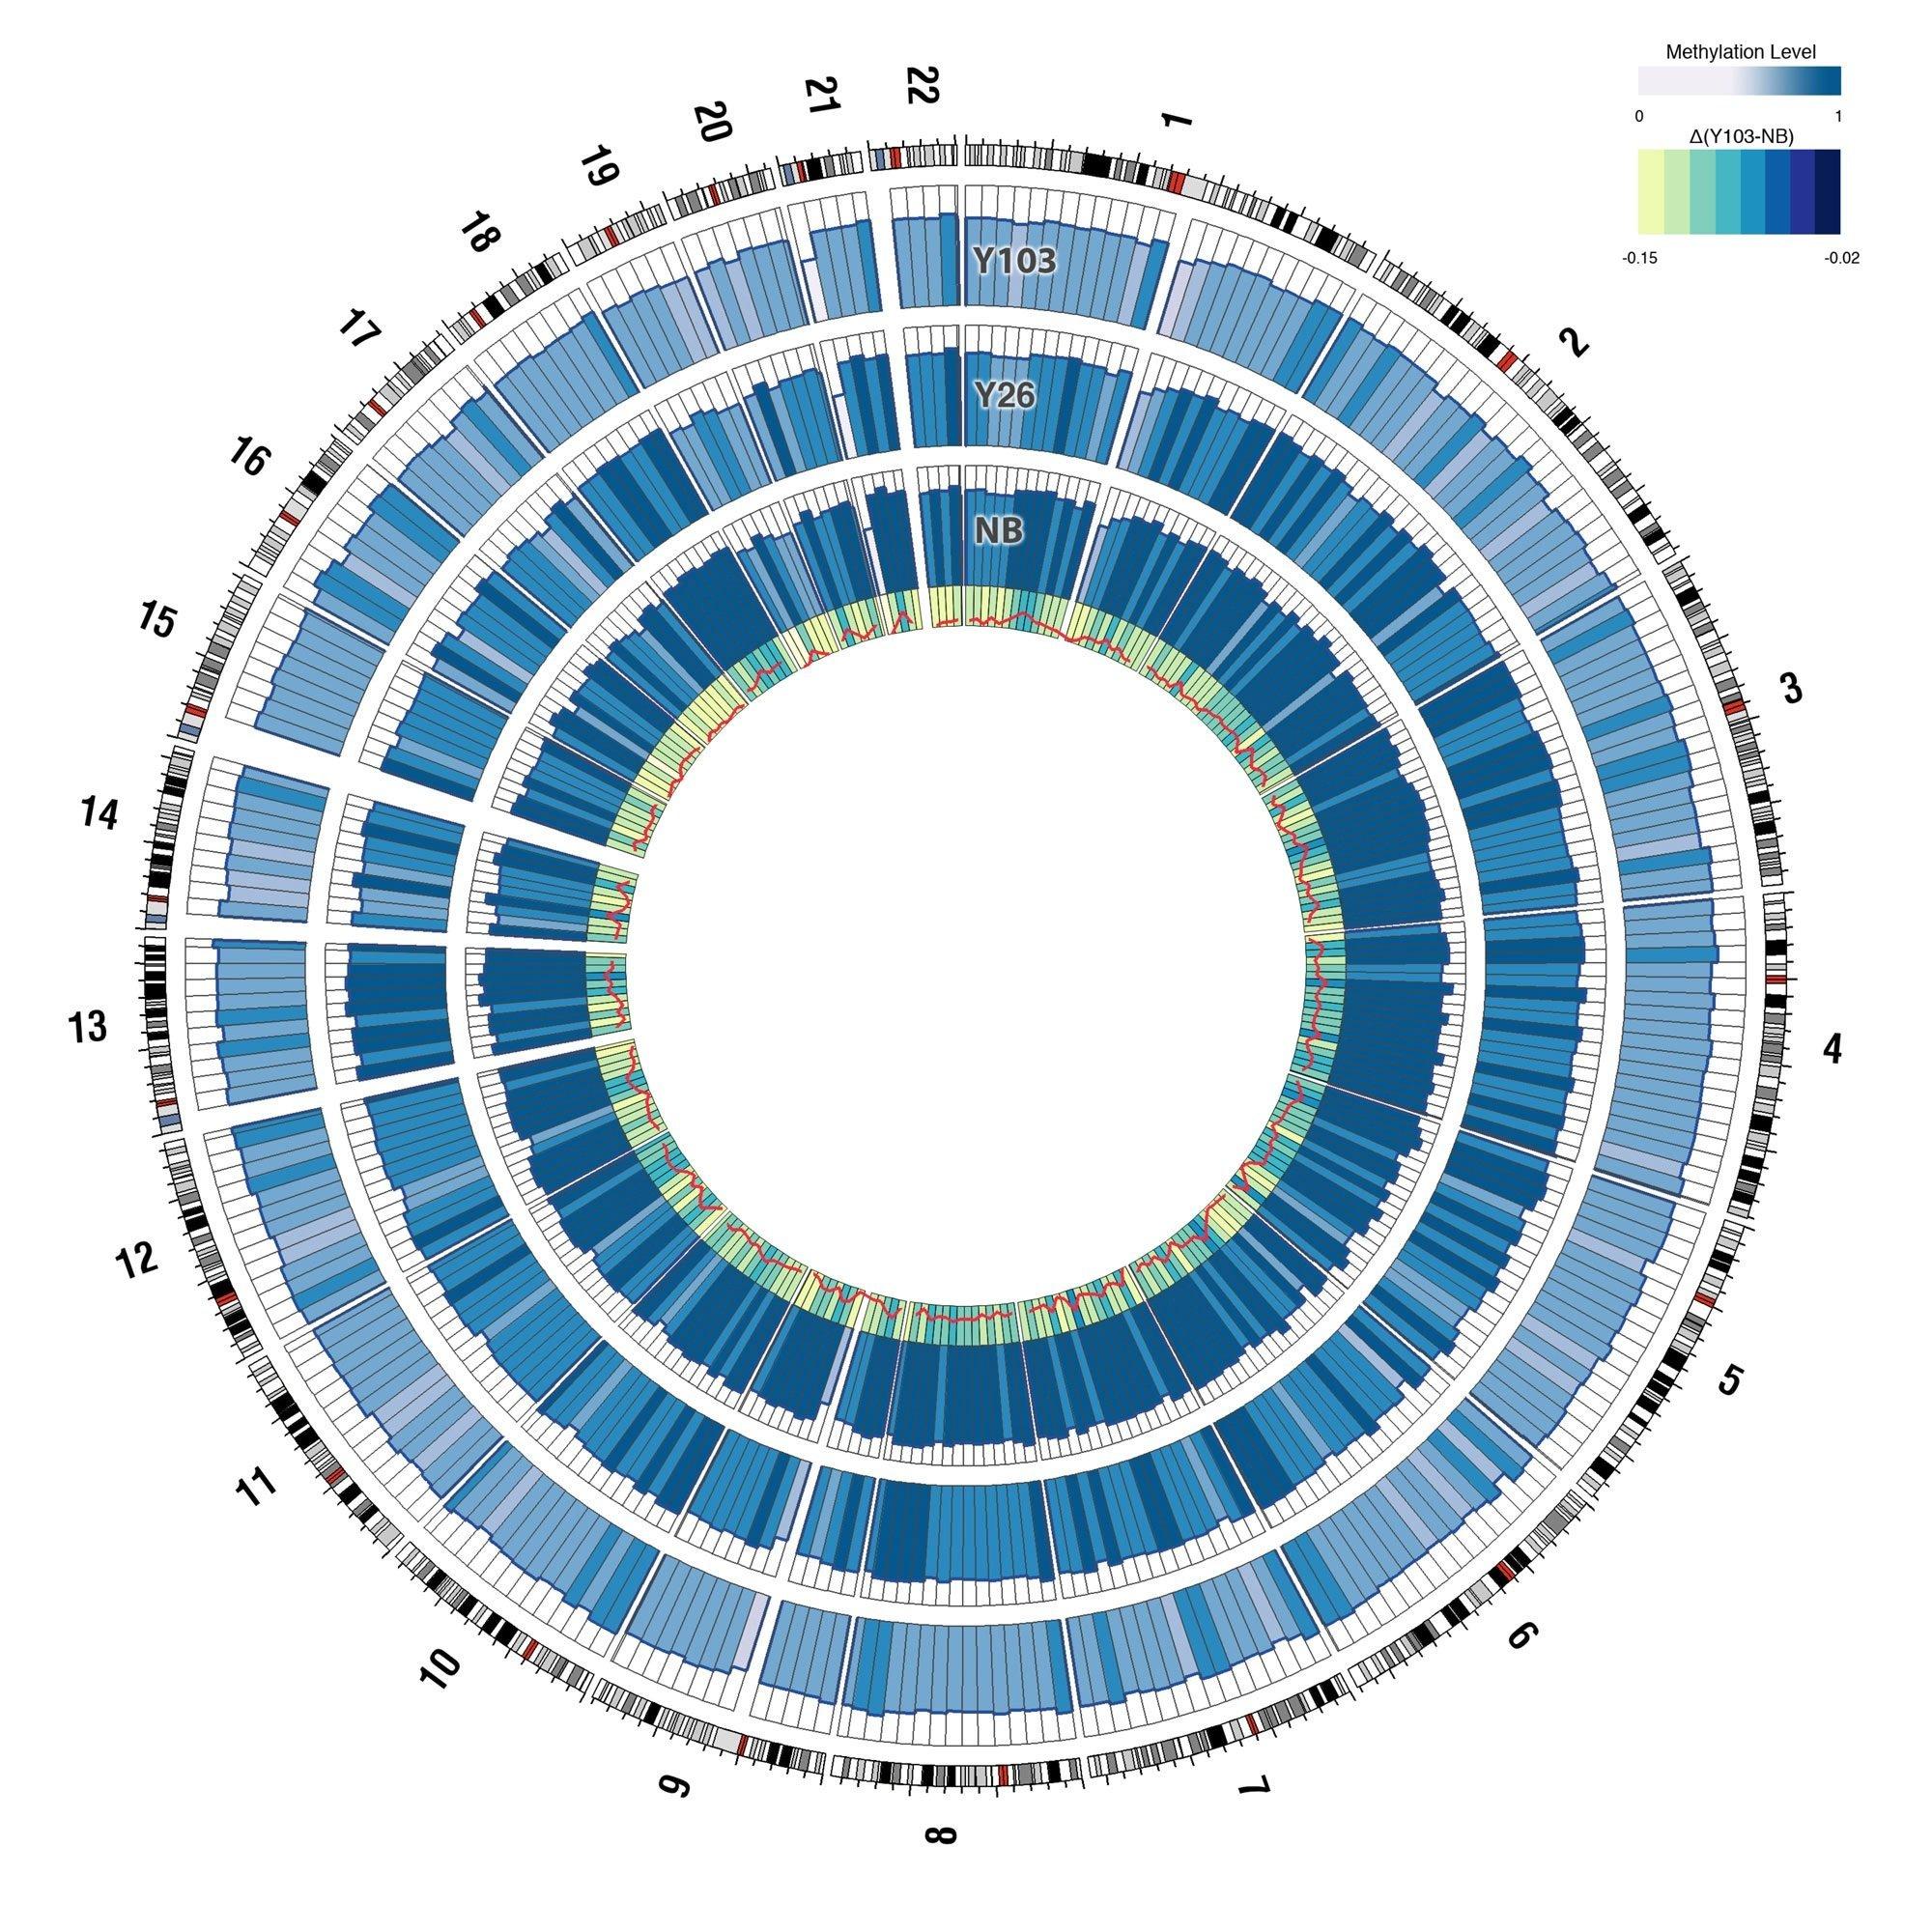 Drei verschieden stark gefärbte Kreise zeigen den Unterschied des DNA-Methylierungsmuster zwischen einem Neugeborenen, einem 26-jährigen und einem 103-jährigen Menschen.